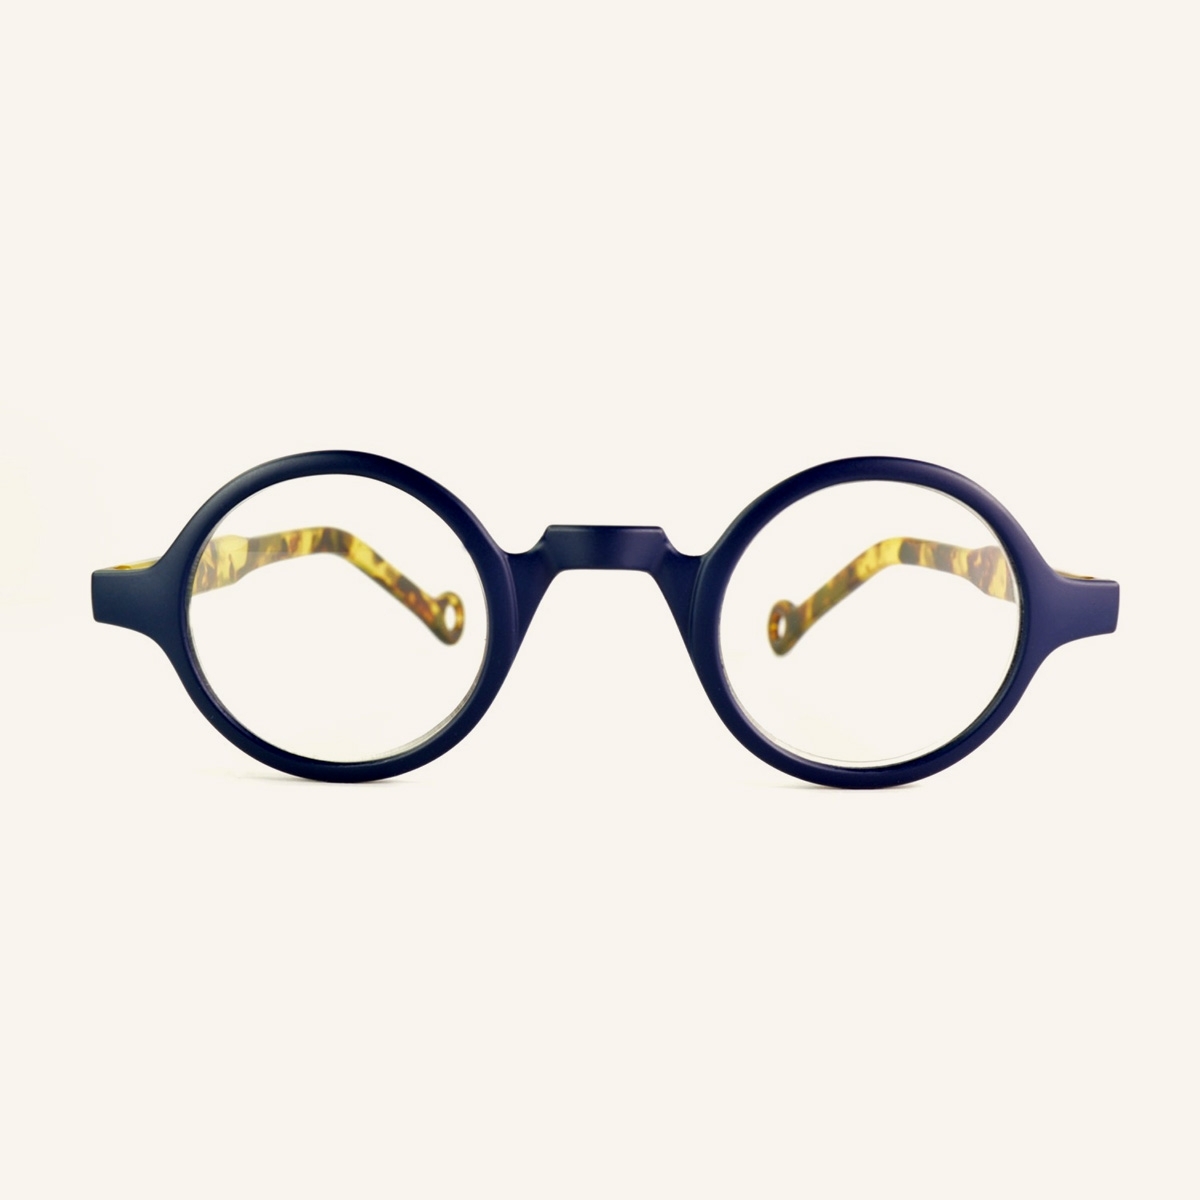 Retro reading glasses Funkyreaders- K-eyes